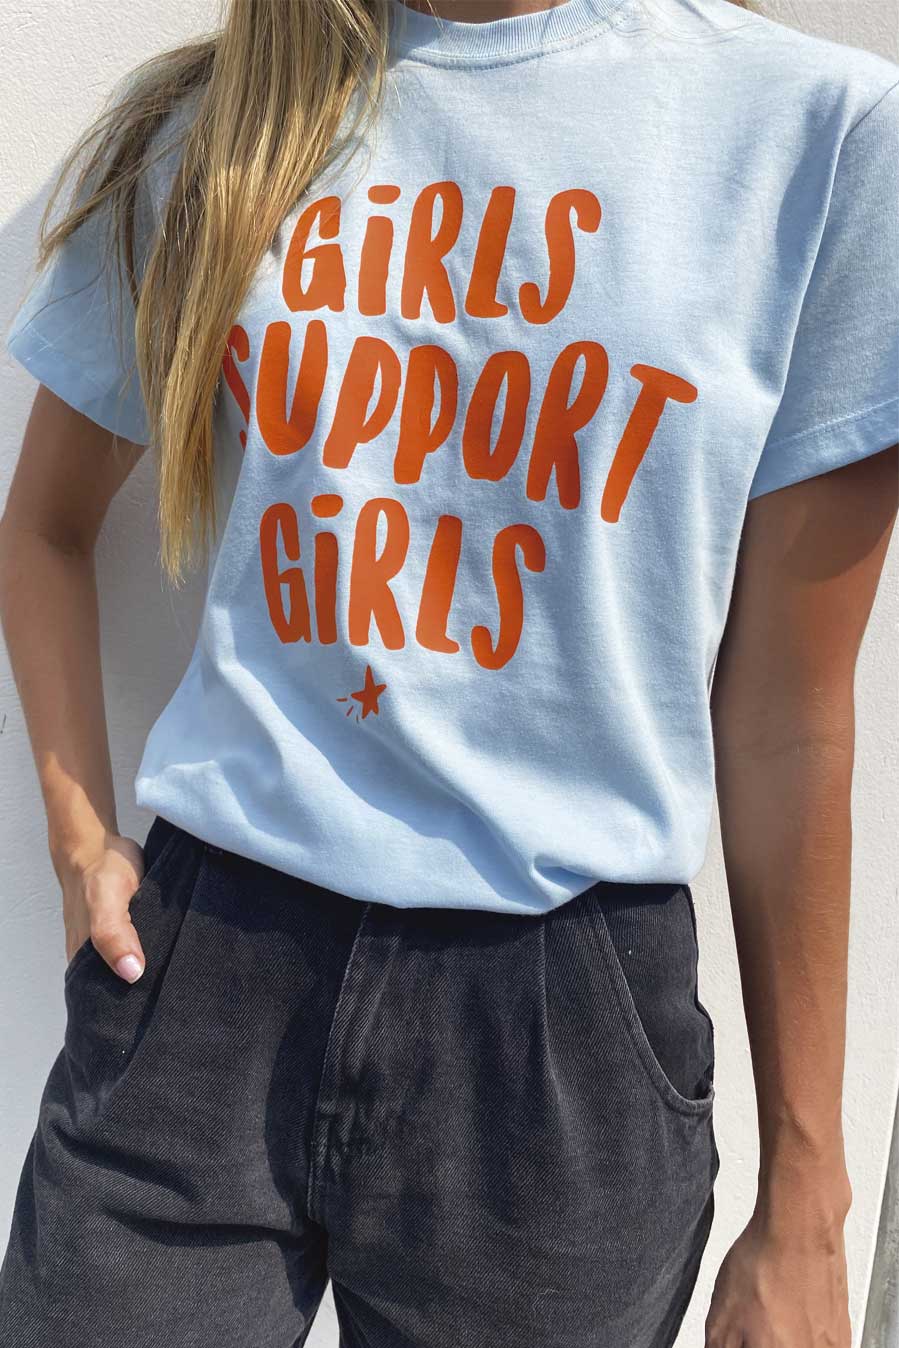 T-shirt Girls support girls